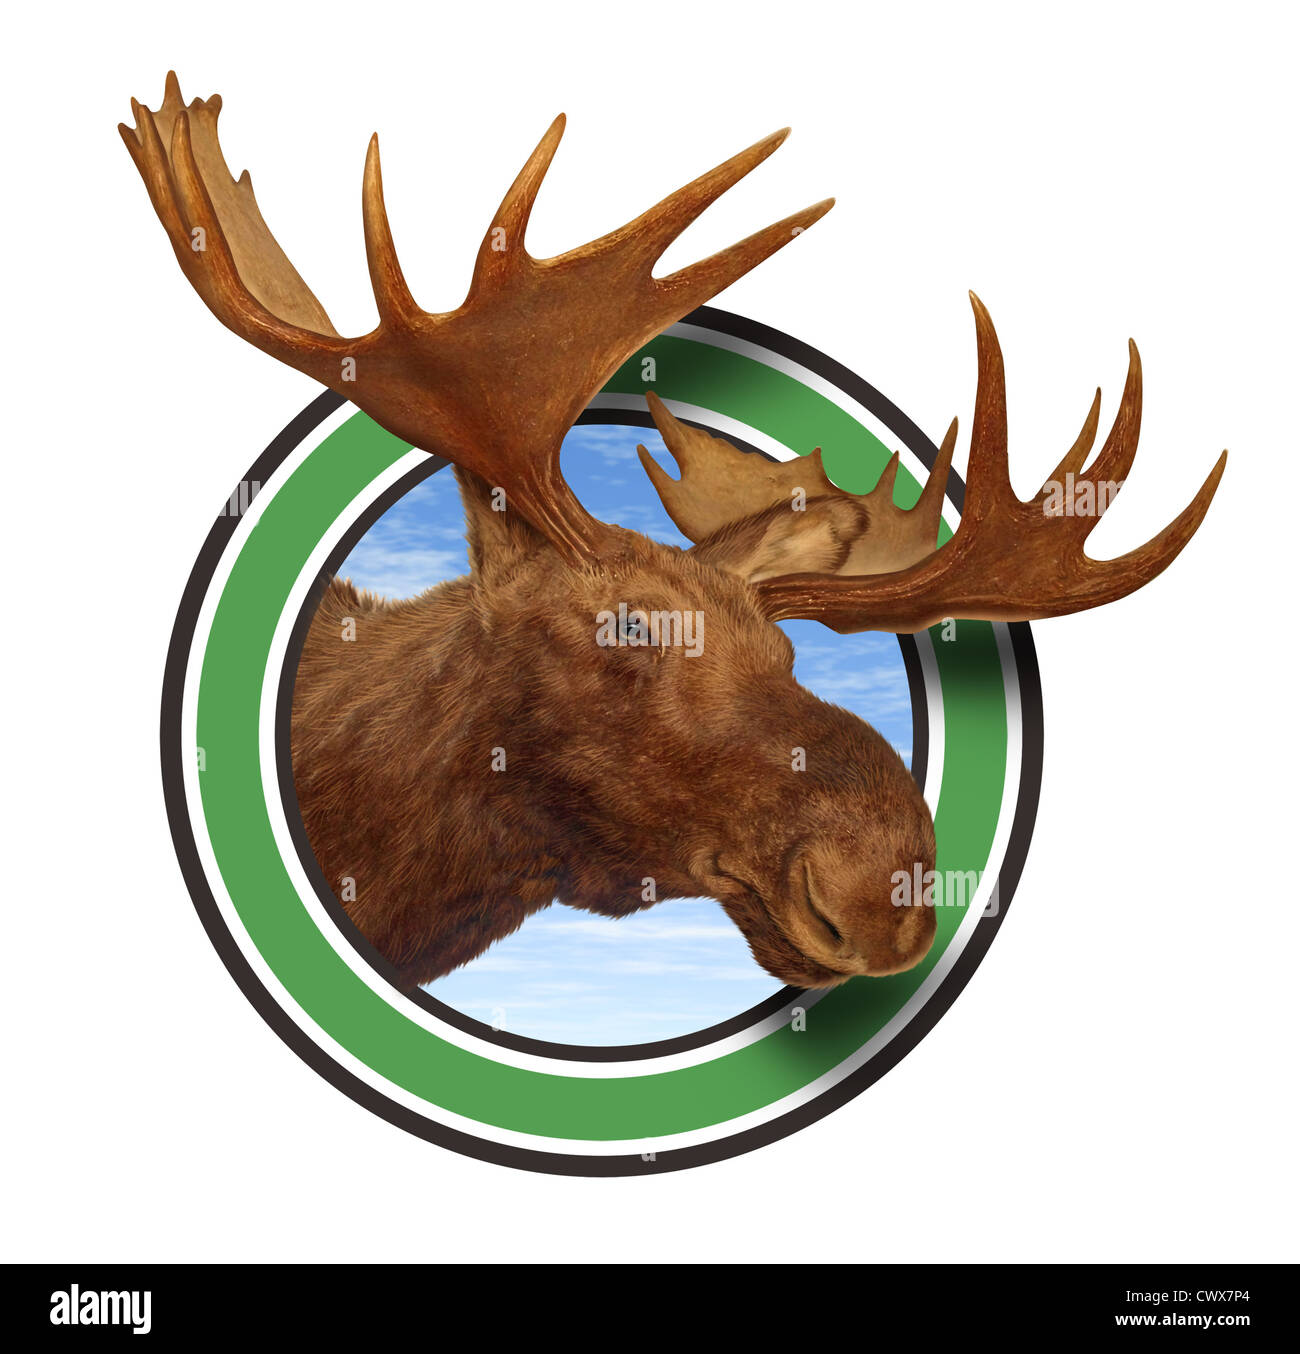 Testa di alce corna icona della foresta isolata su sfondo bianco che rappresenta la fauna del nord dalla fauna selvatica del Canadese che Americano delle montagne del nord responsabile per la caccia e la conservazione naturale. Foto Stock